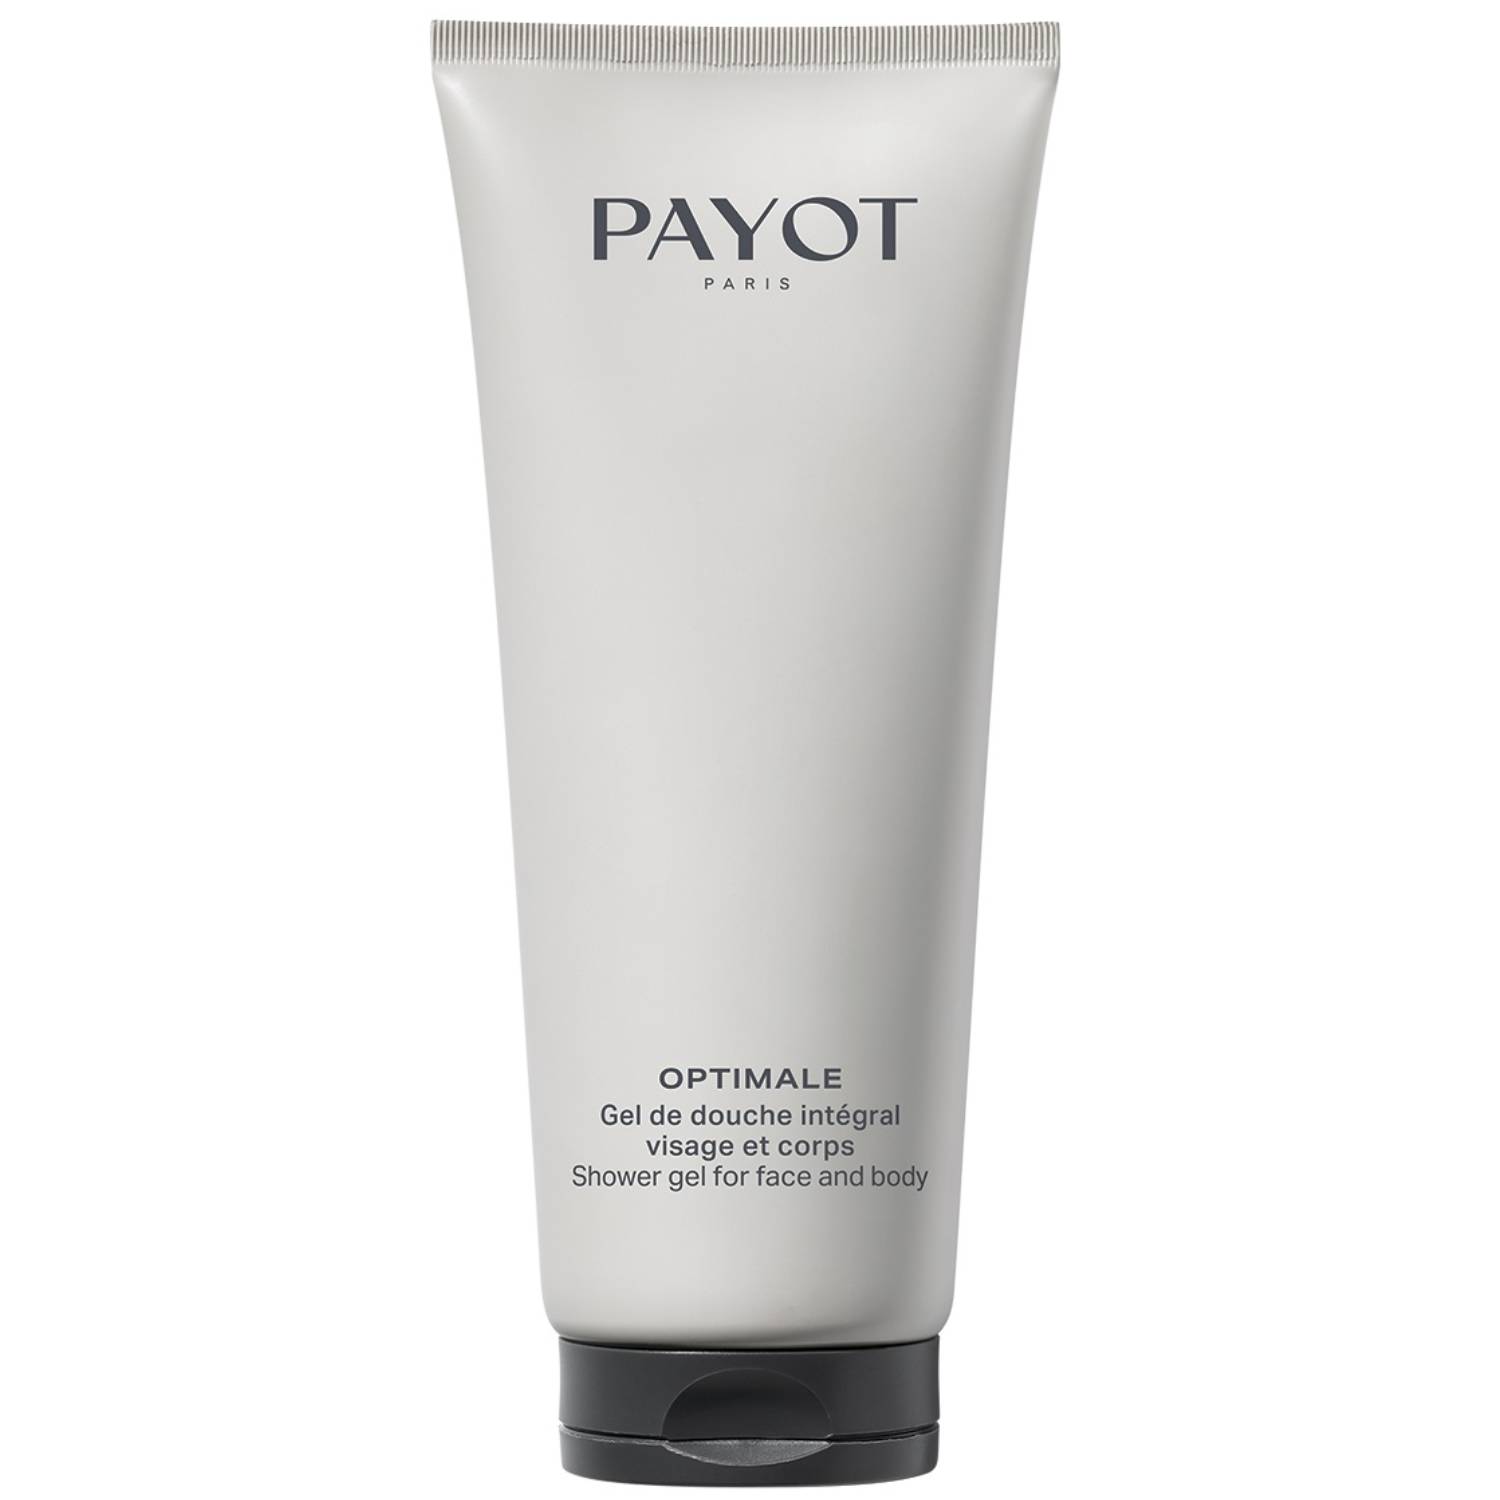 гель для душа payot гель очищающий тонизирующий для лица и тела для мужчин optimale Payot Очищающий гель для волос, тела и лица Integral 3в1 для мужчин, 200 мл (Payot, Optimale)